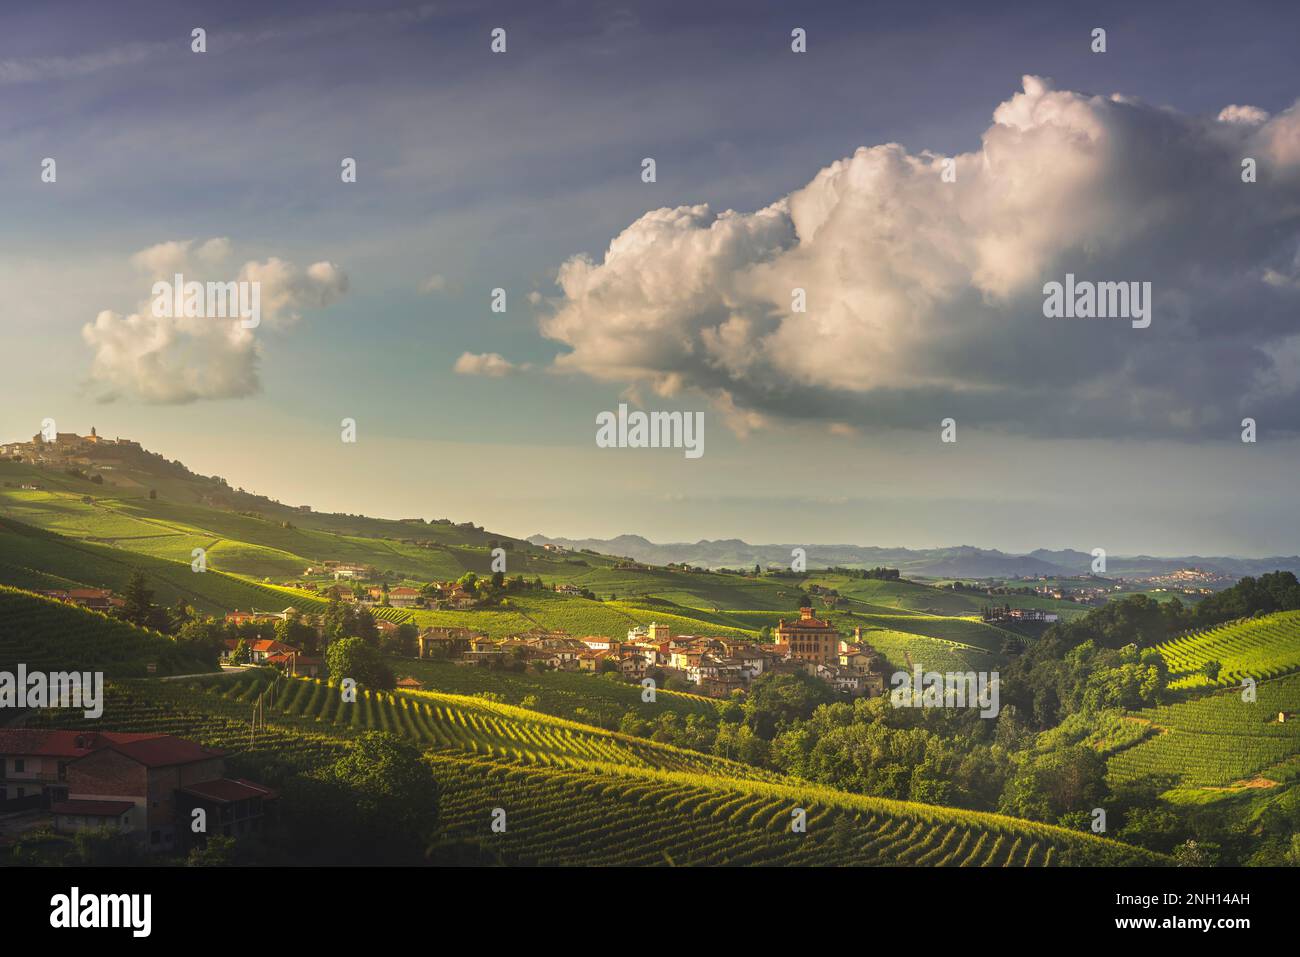 Paysage de vignobles de Langhe au coucher du soleil, village de Barolo au milieu et village de la Morra sur la gauche au sommet de la colline, site classé au patrimoine mondial de l'UNESCO Banque D'Images